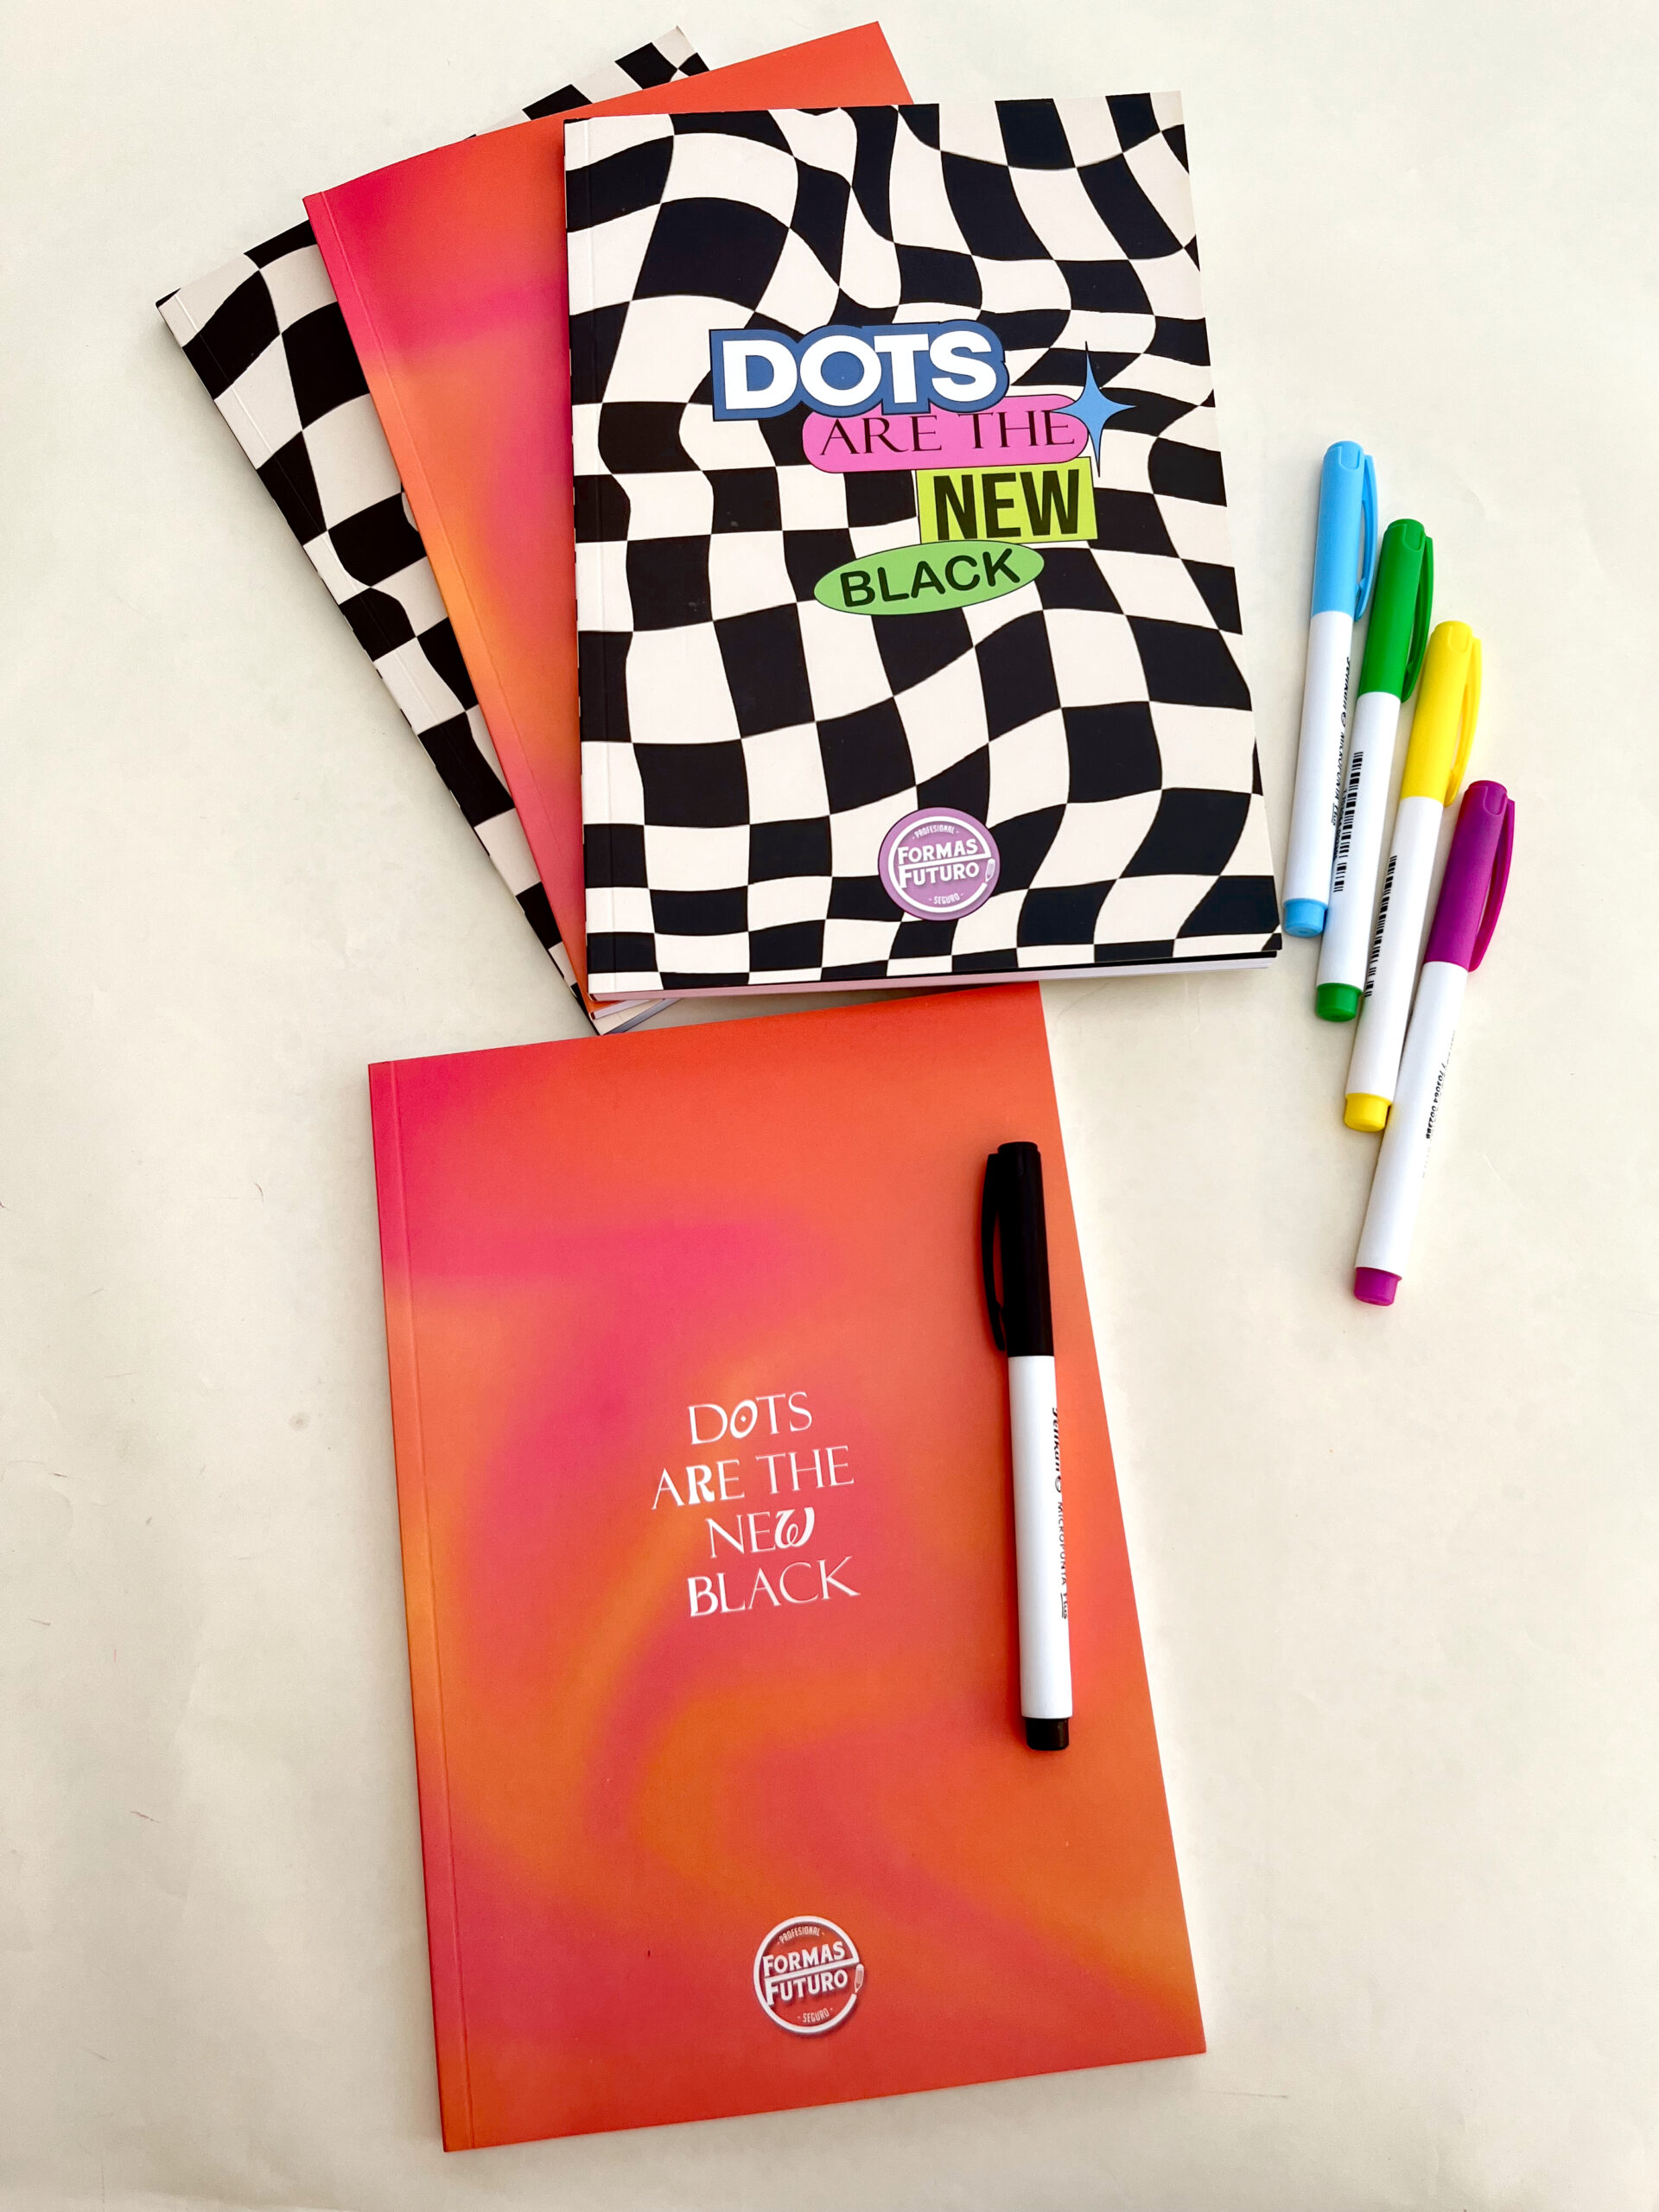 Cuaderno ideal para tomar apuntes, practicar journaling, bullet journal, dibujar y mÃ¡s. Un compaÃ±ero perfecto para expresar tu creatividad y organizarÂ tusÂ ideas.